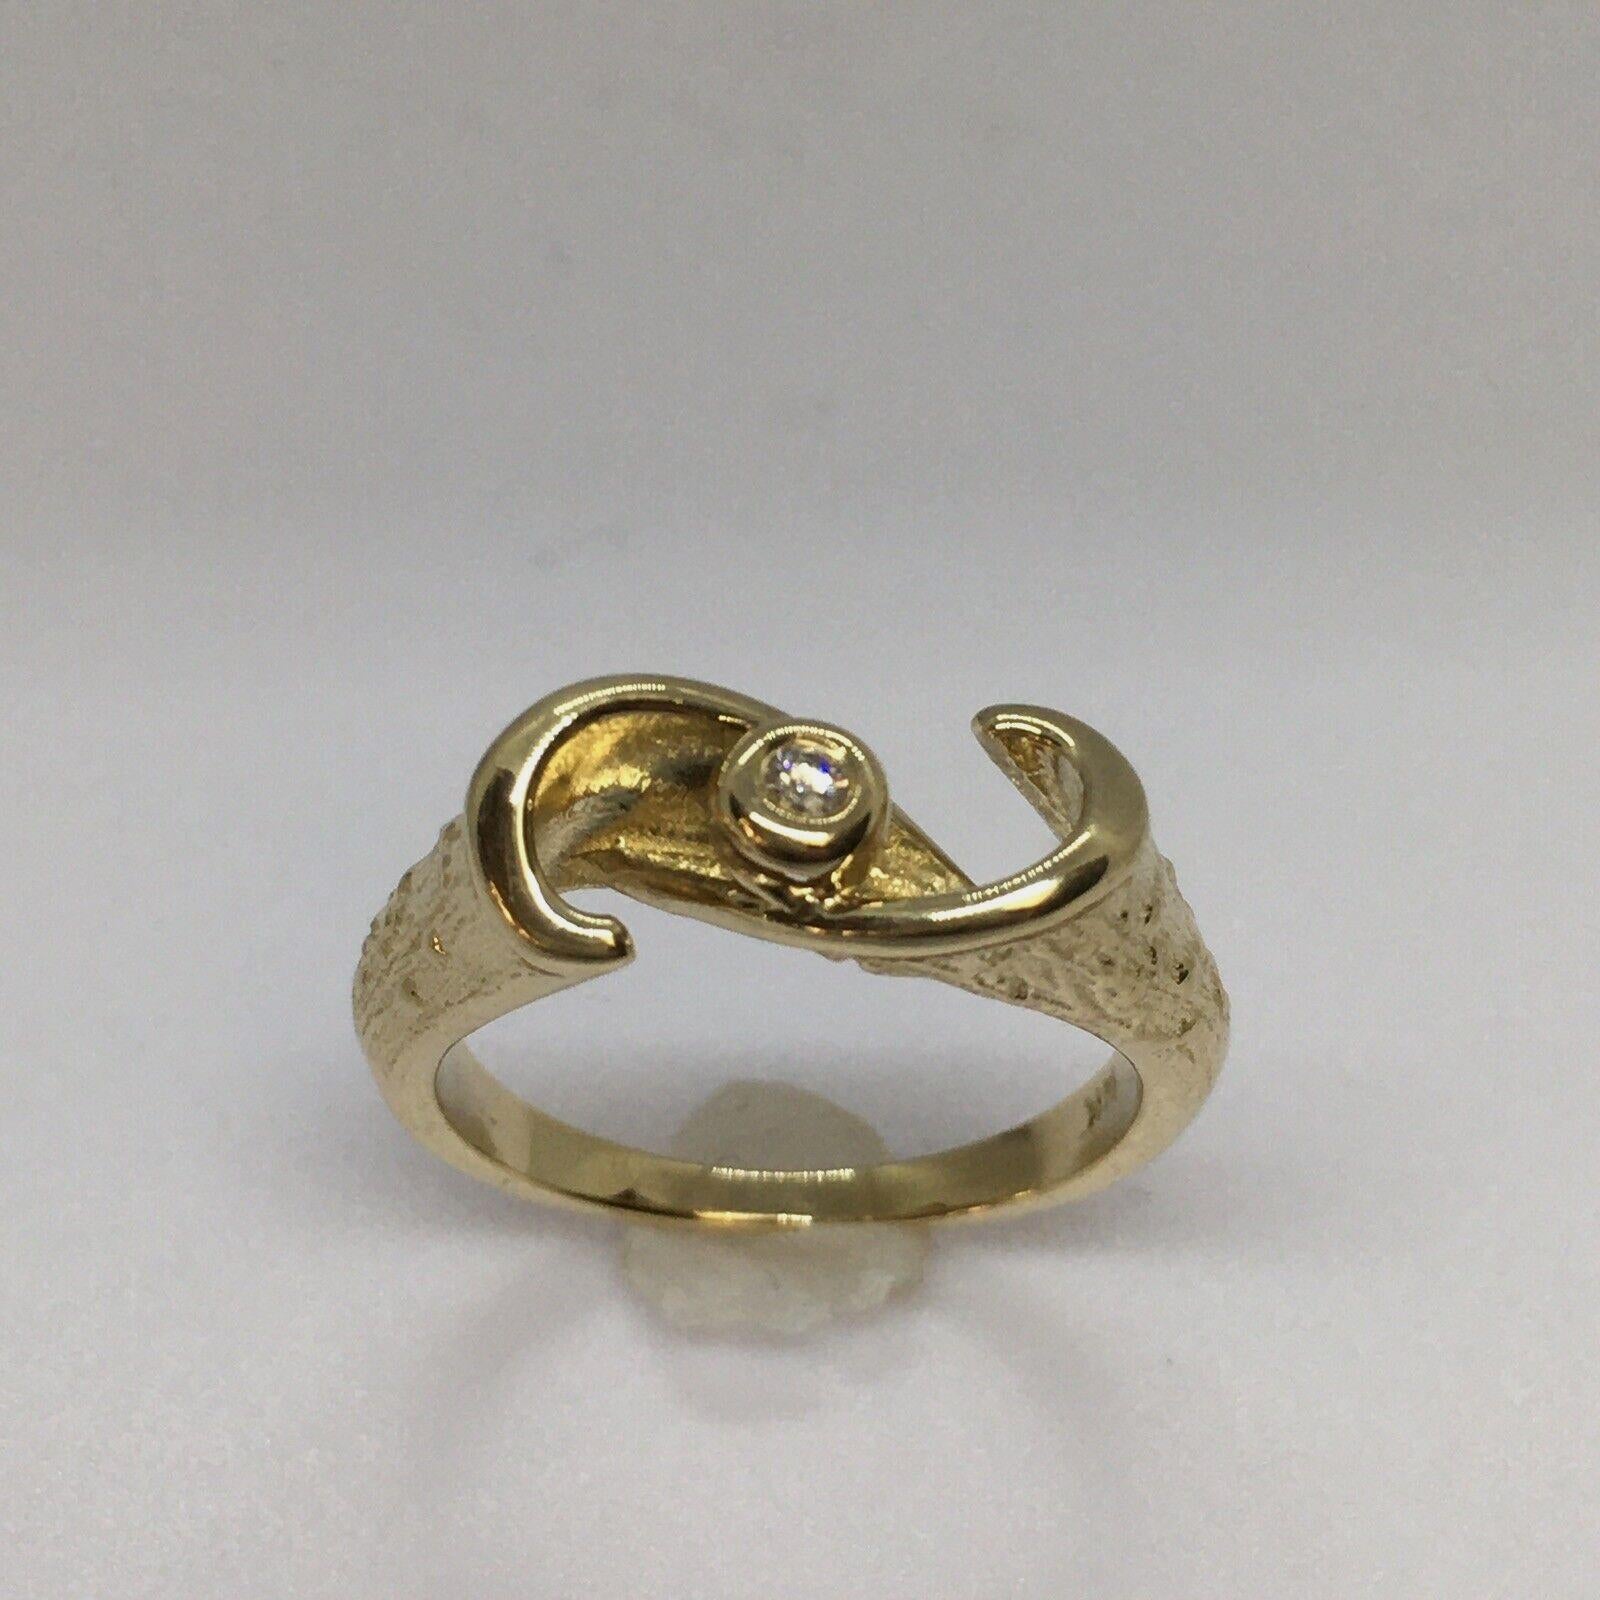 For Sale:  14 Karat Yellow Gold Lady's Diamond Ring Weighing 2.4 Gram 4